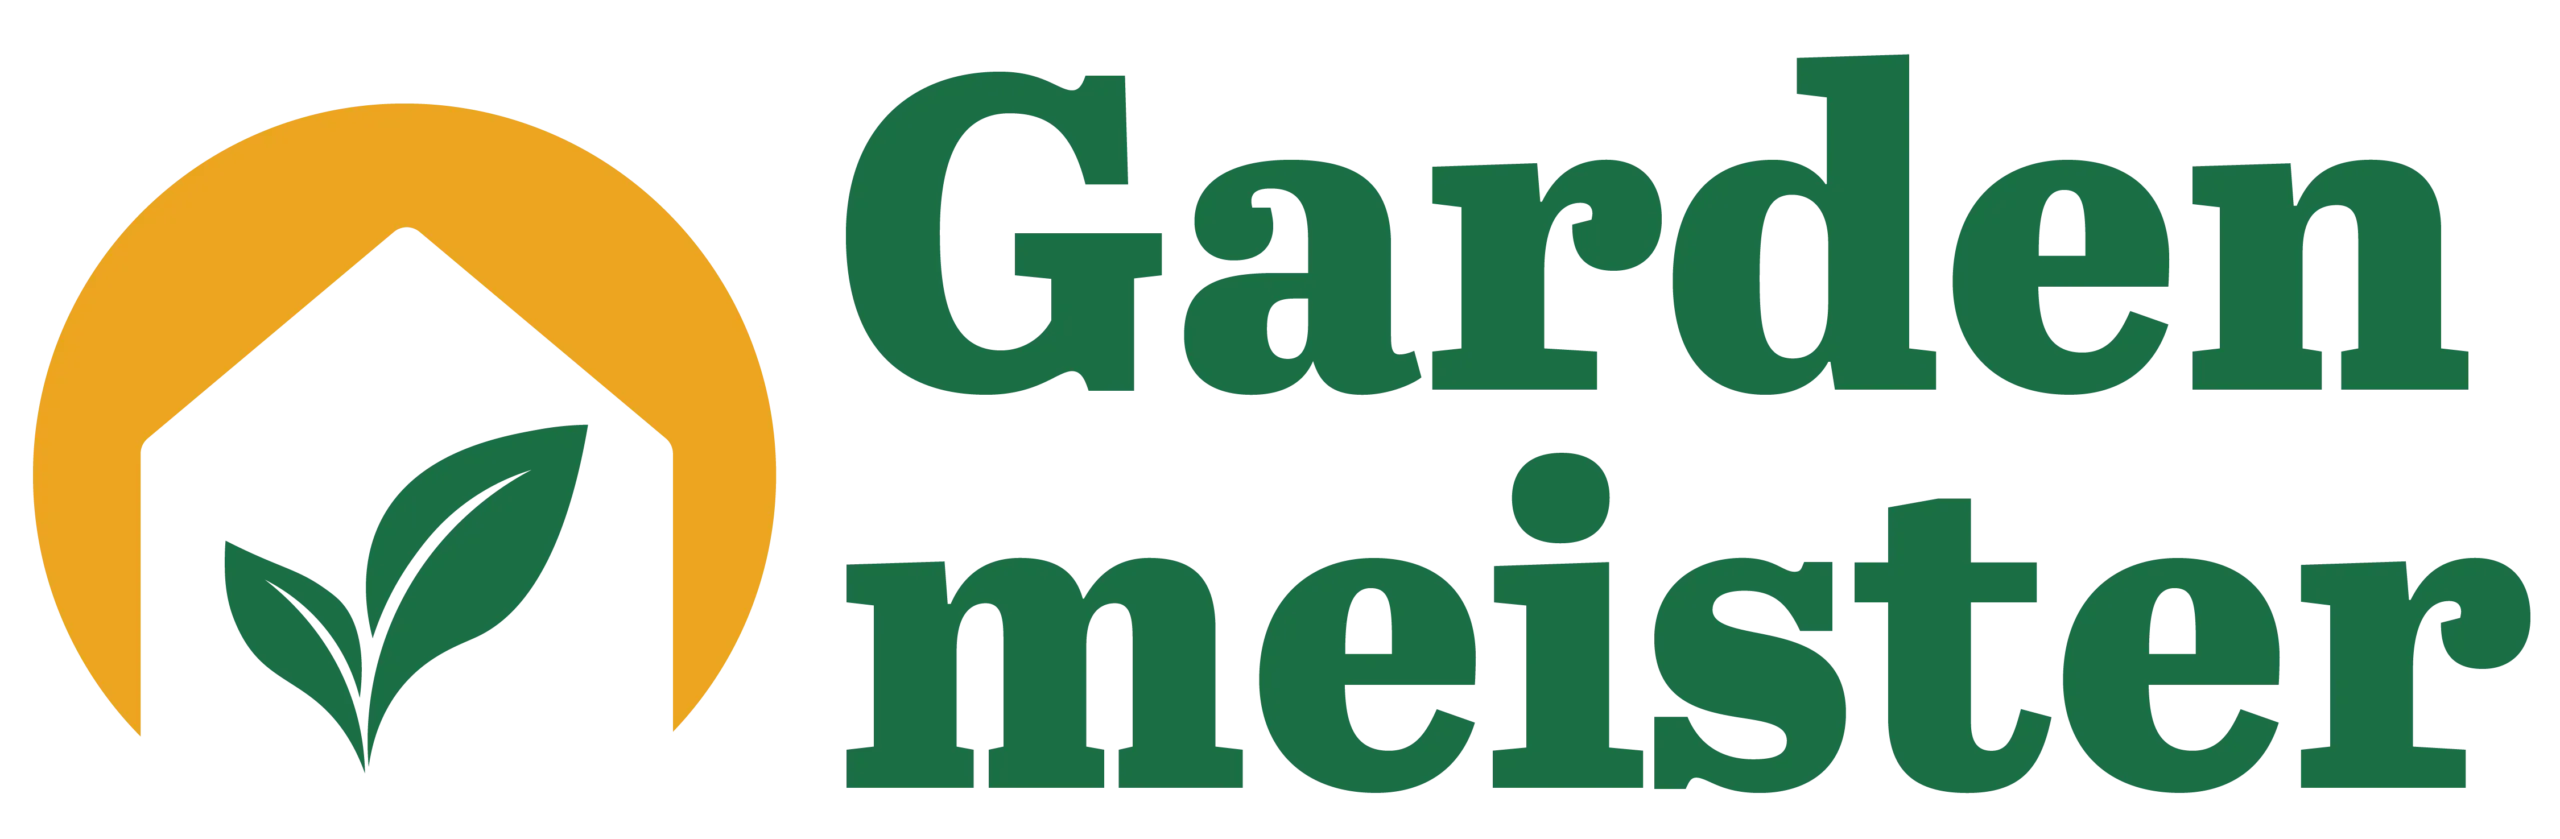 Gardenmeister, logo